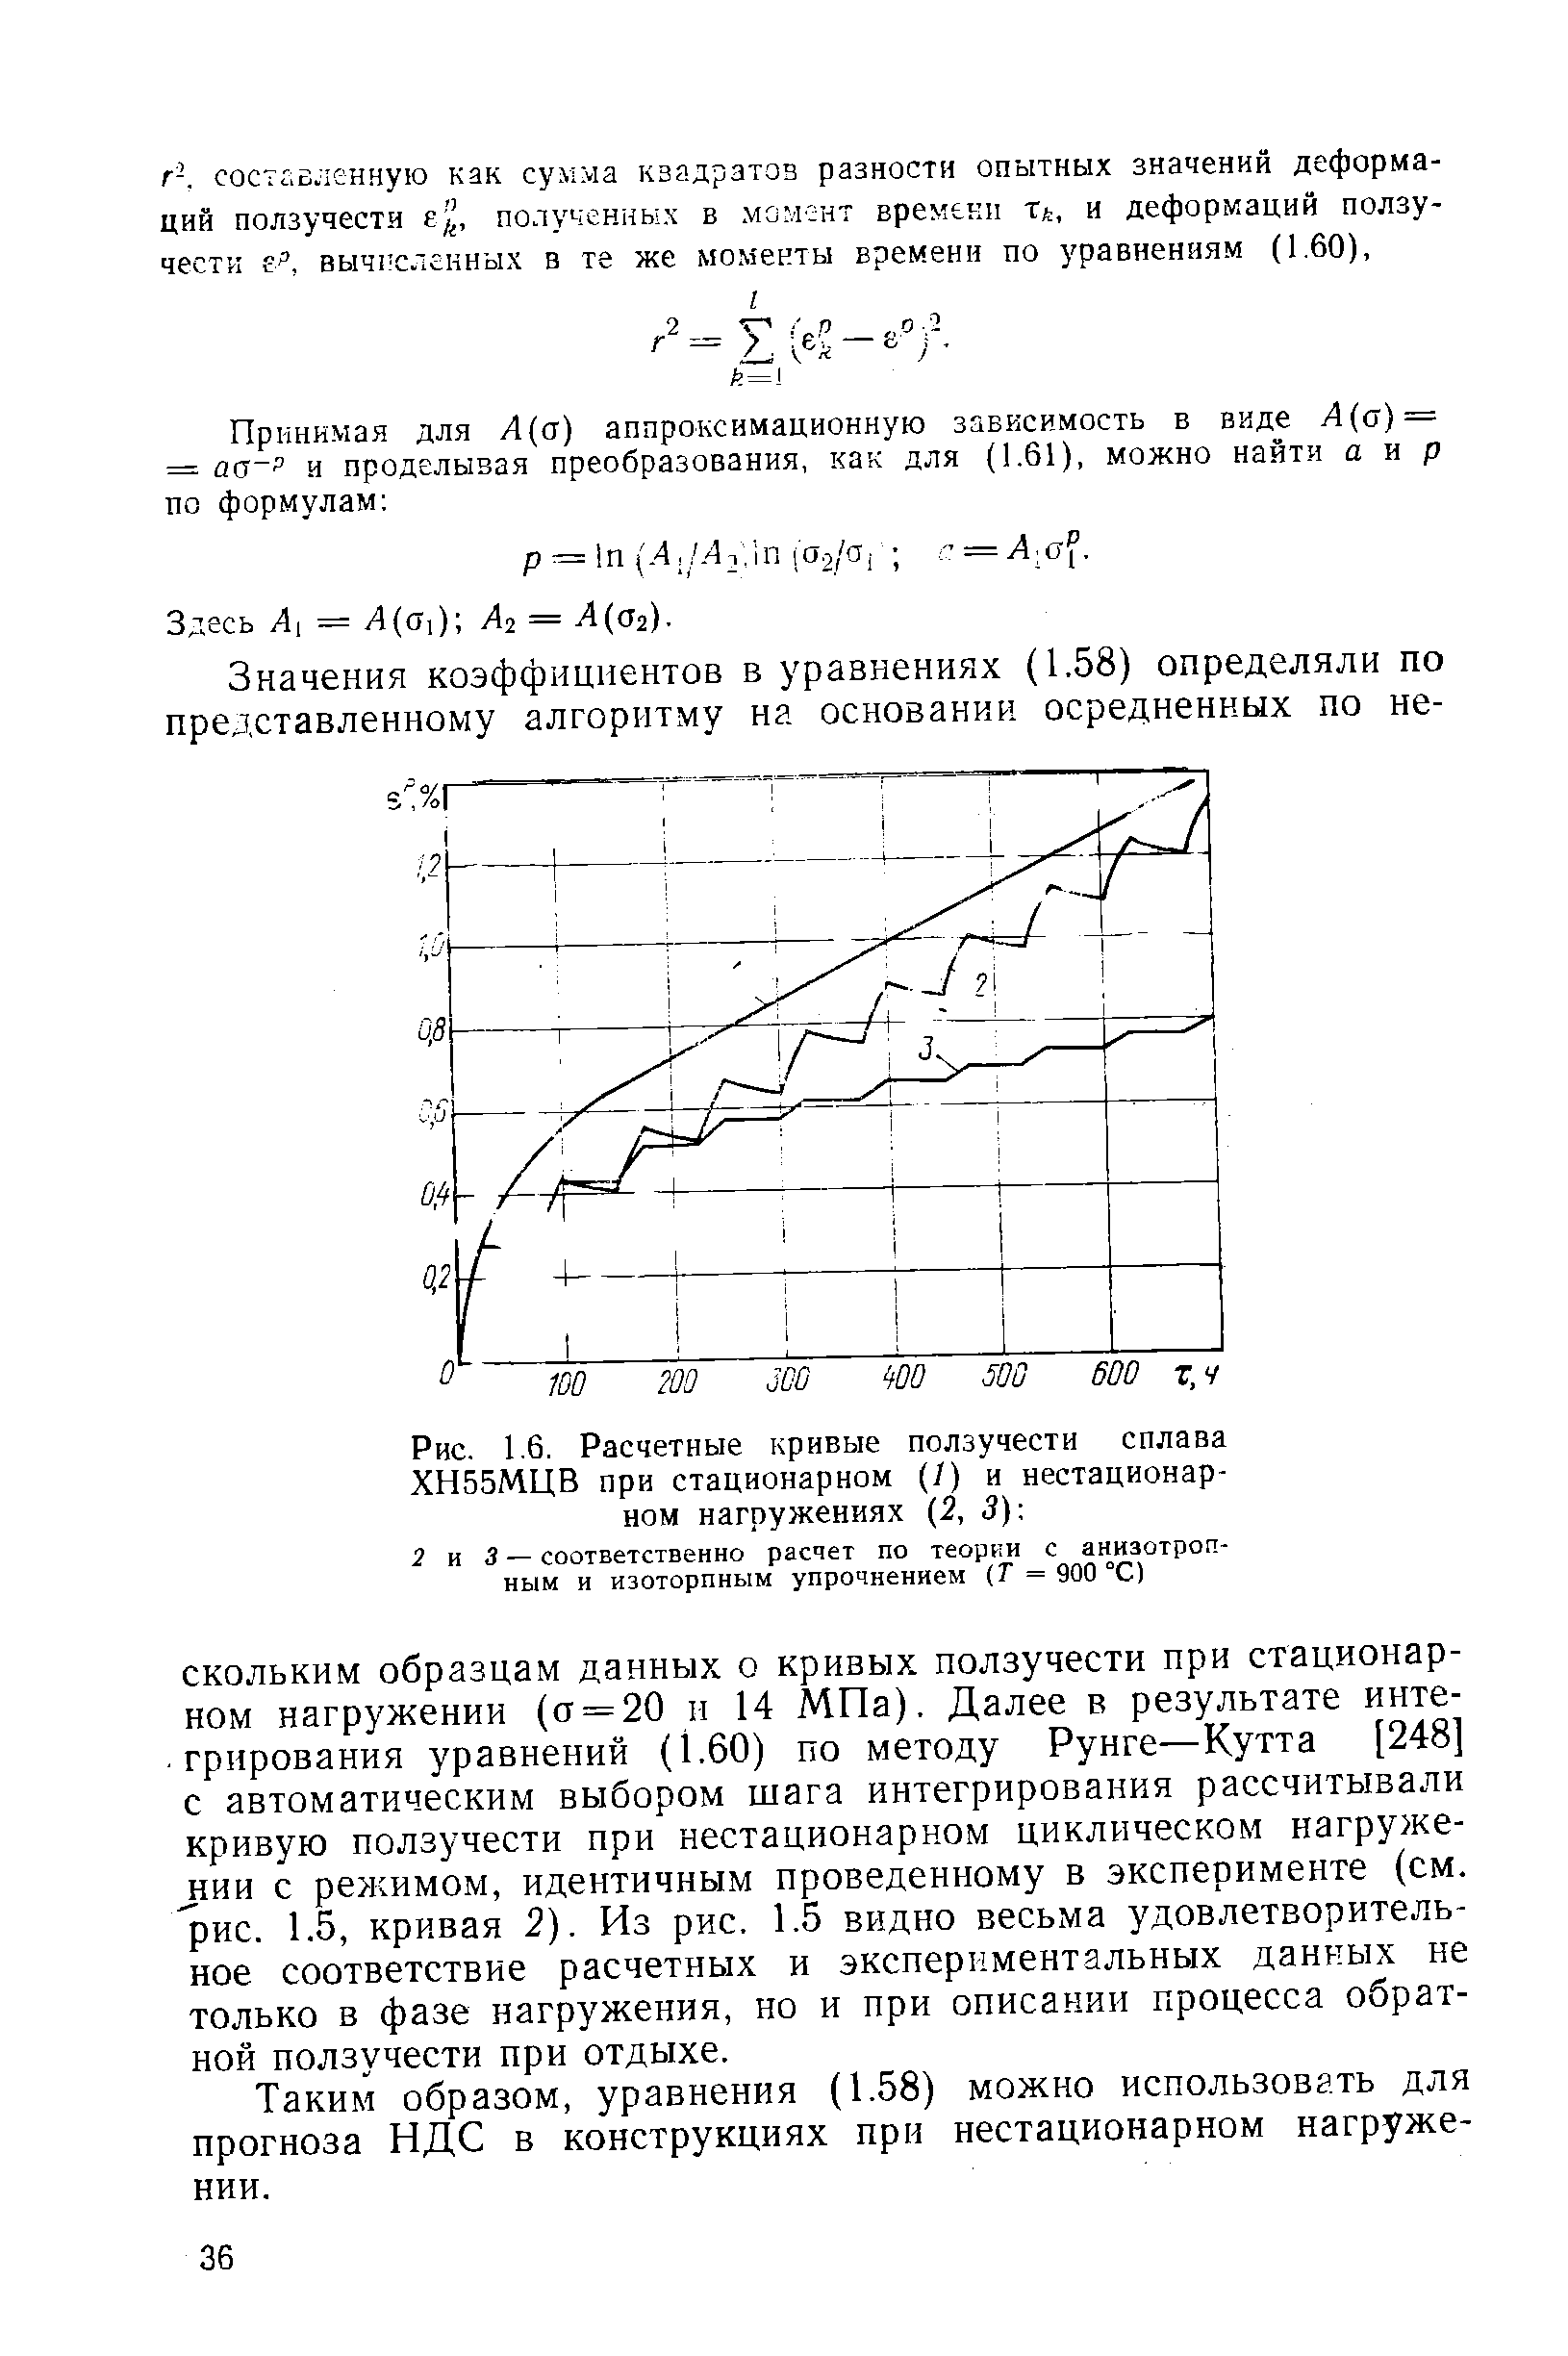 Рис. 1.6. Расчетные кривые ползучести сплава ХН55МЦВ при стационарном (/) и нестационарном нагружениях (2, 3) 
